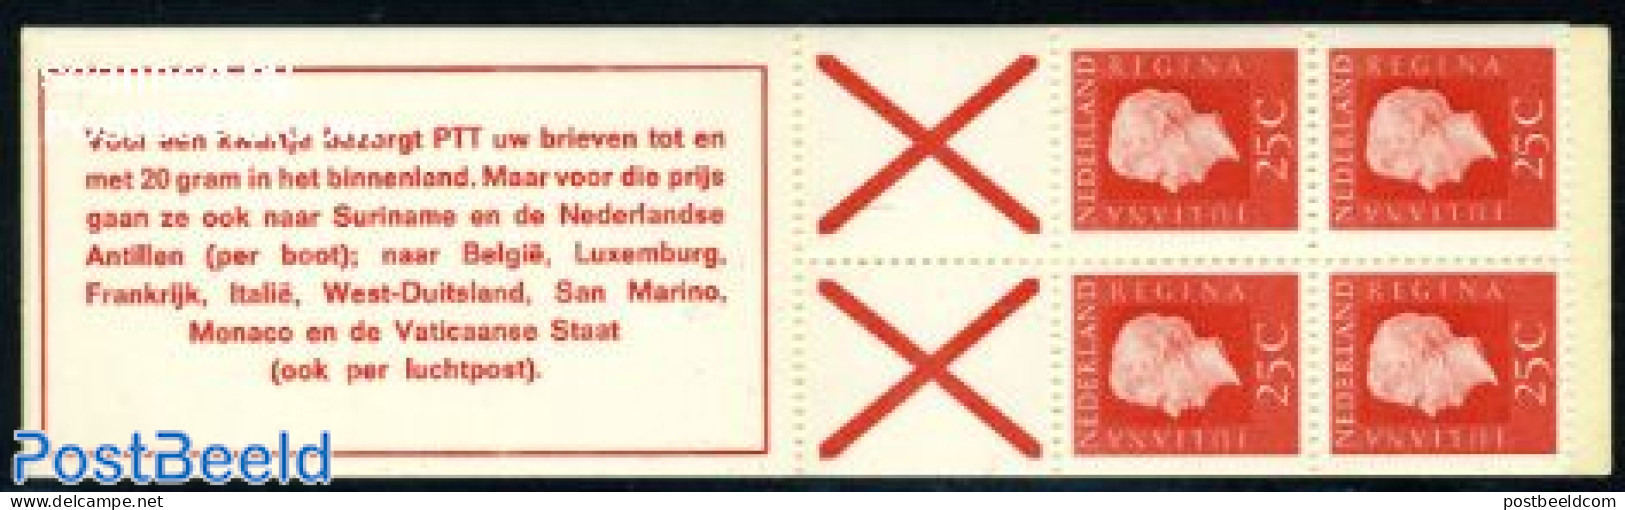 Netherlands 1970 4x25c Booklet, Phosphor, Count Block, Voor Een Kwa, Mint NH, Stamp Booklets - Nuevos